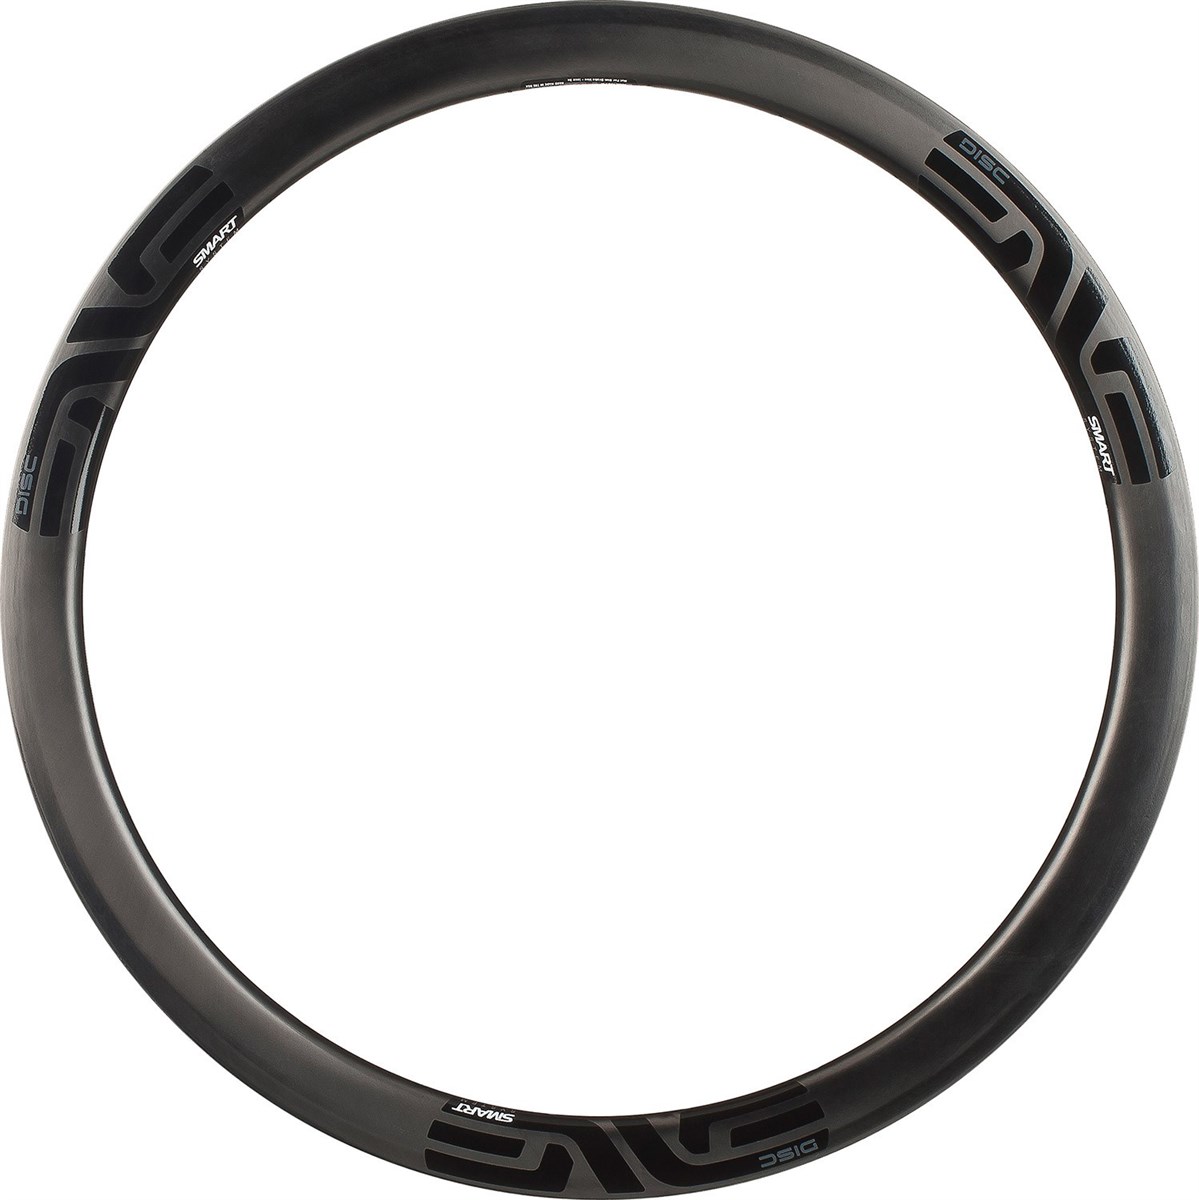 Enve 3.4 SES Clincher Disc Rear Road Rim product image